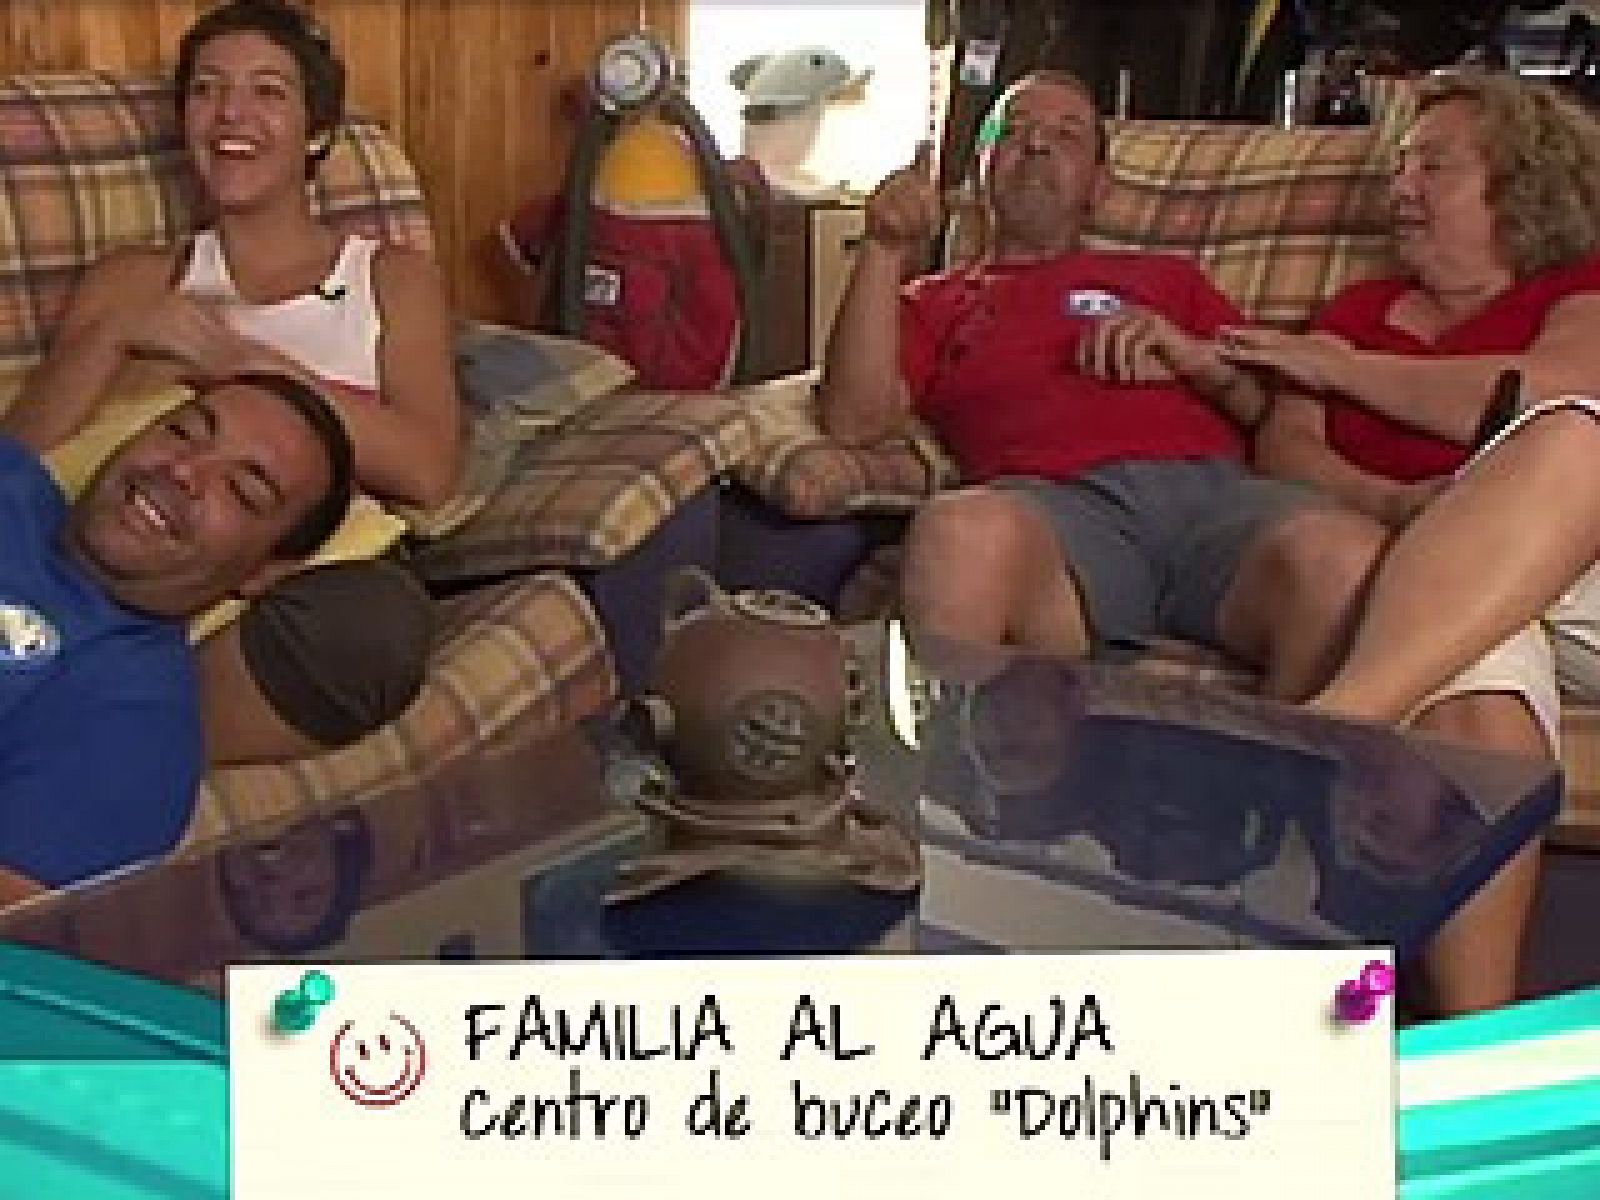 En familia - Familias S.A. - Centro Dolphin de buceo